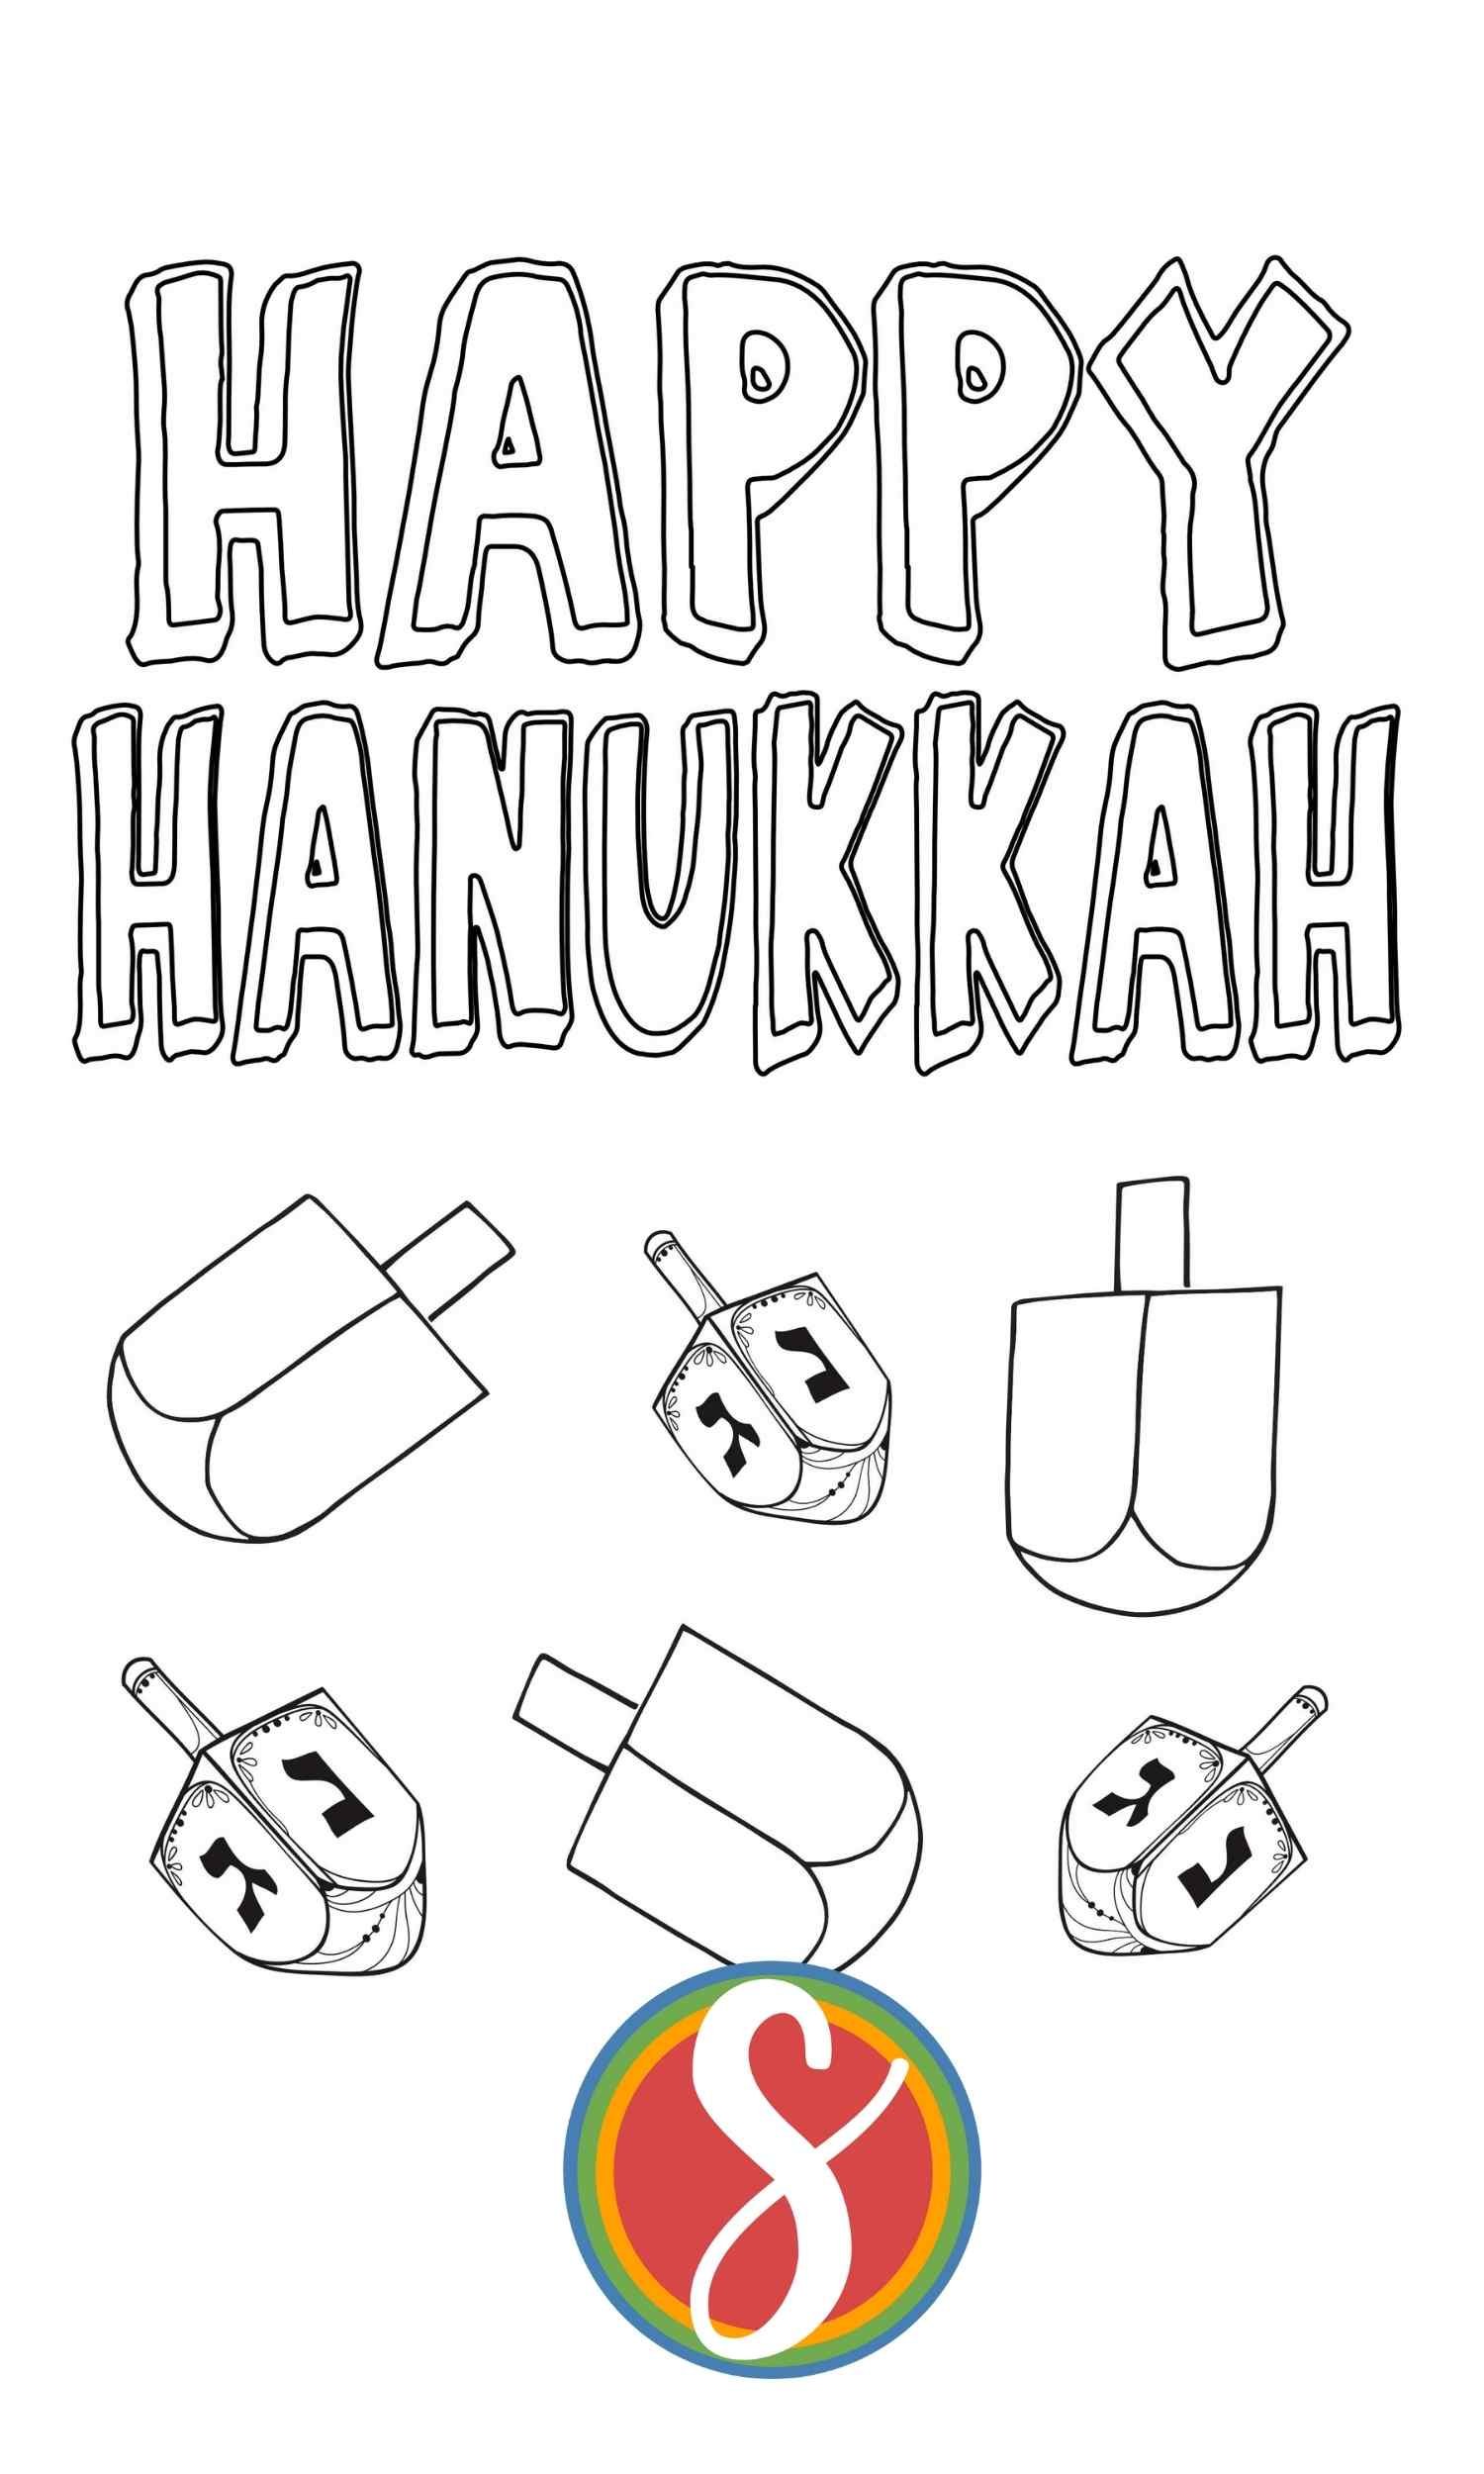 Free hanukkah coloring pages â stevie doodles